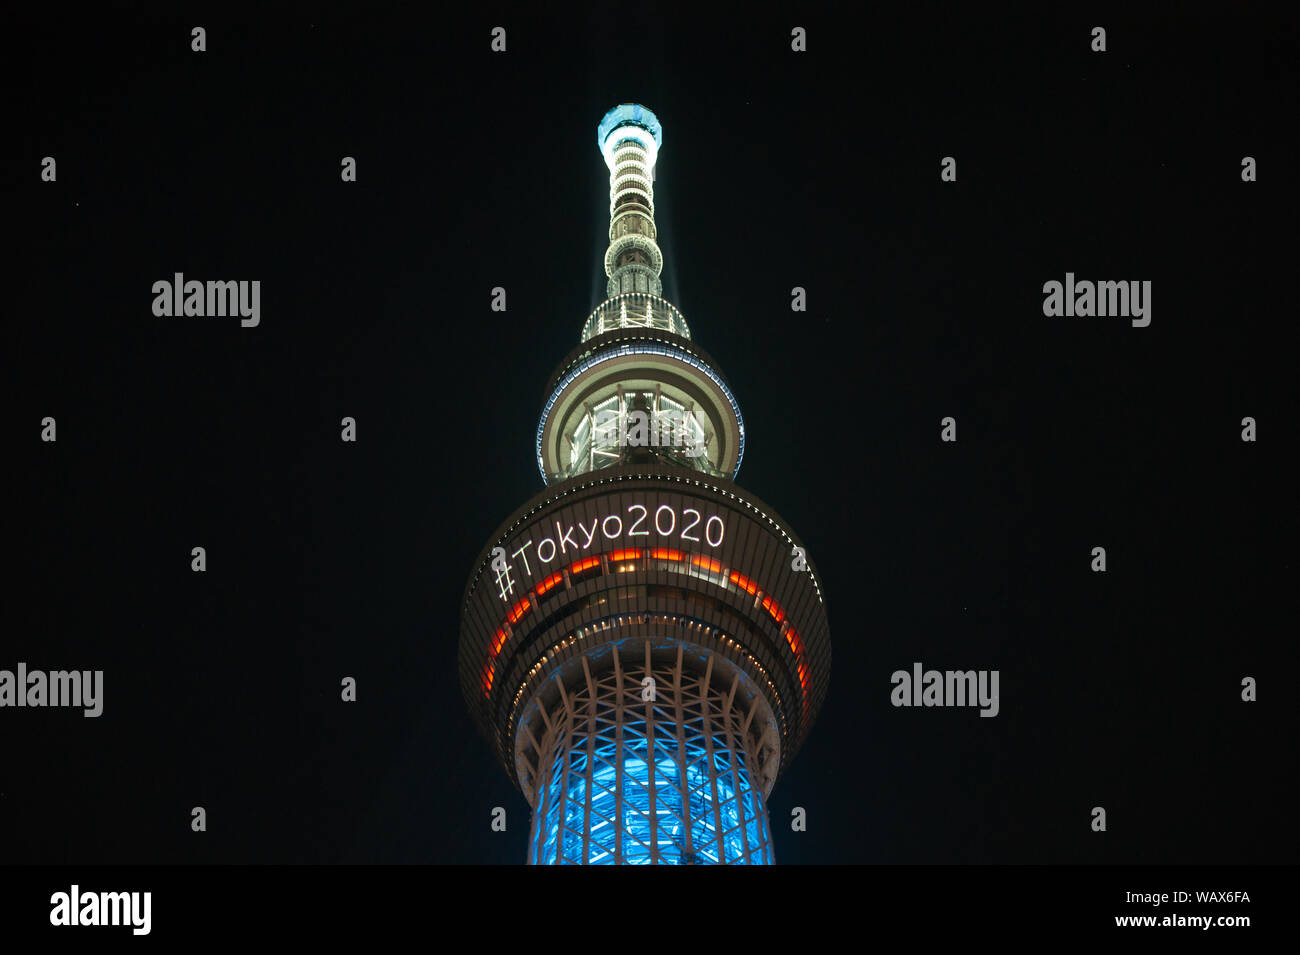 Tokyo, Japan - 29. Juli 2019: Die skytree Turm ist in der Nacht bei der Bekanntgabe der olympischen Spiele in Tokio 2020 mit einem Hashtag beleuchtet. Stockfoto